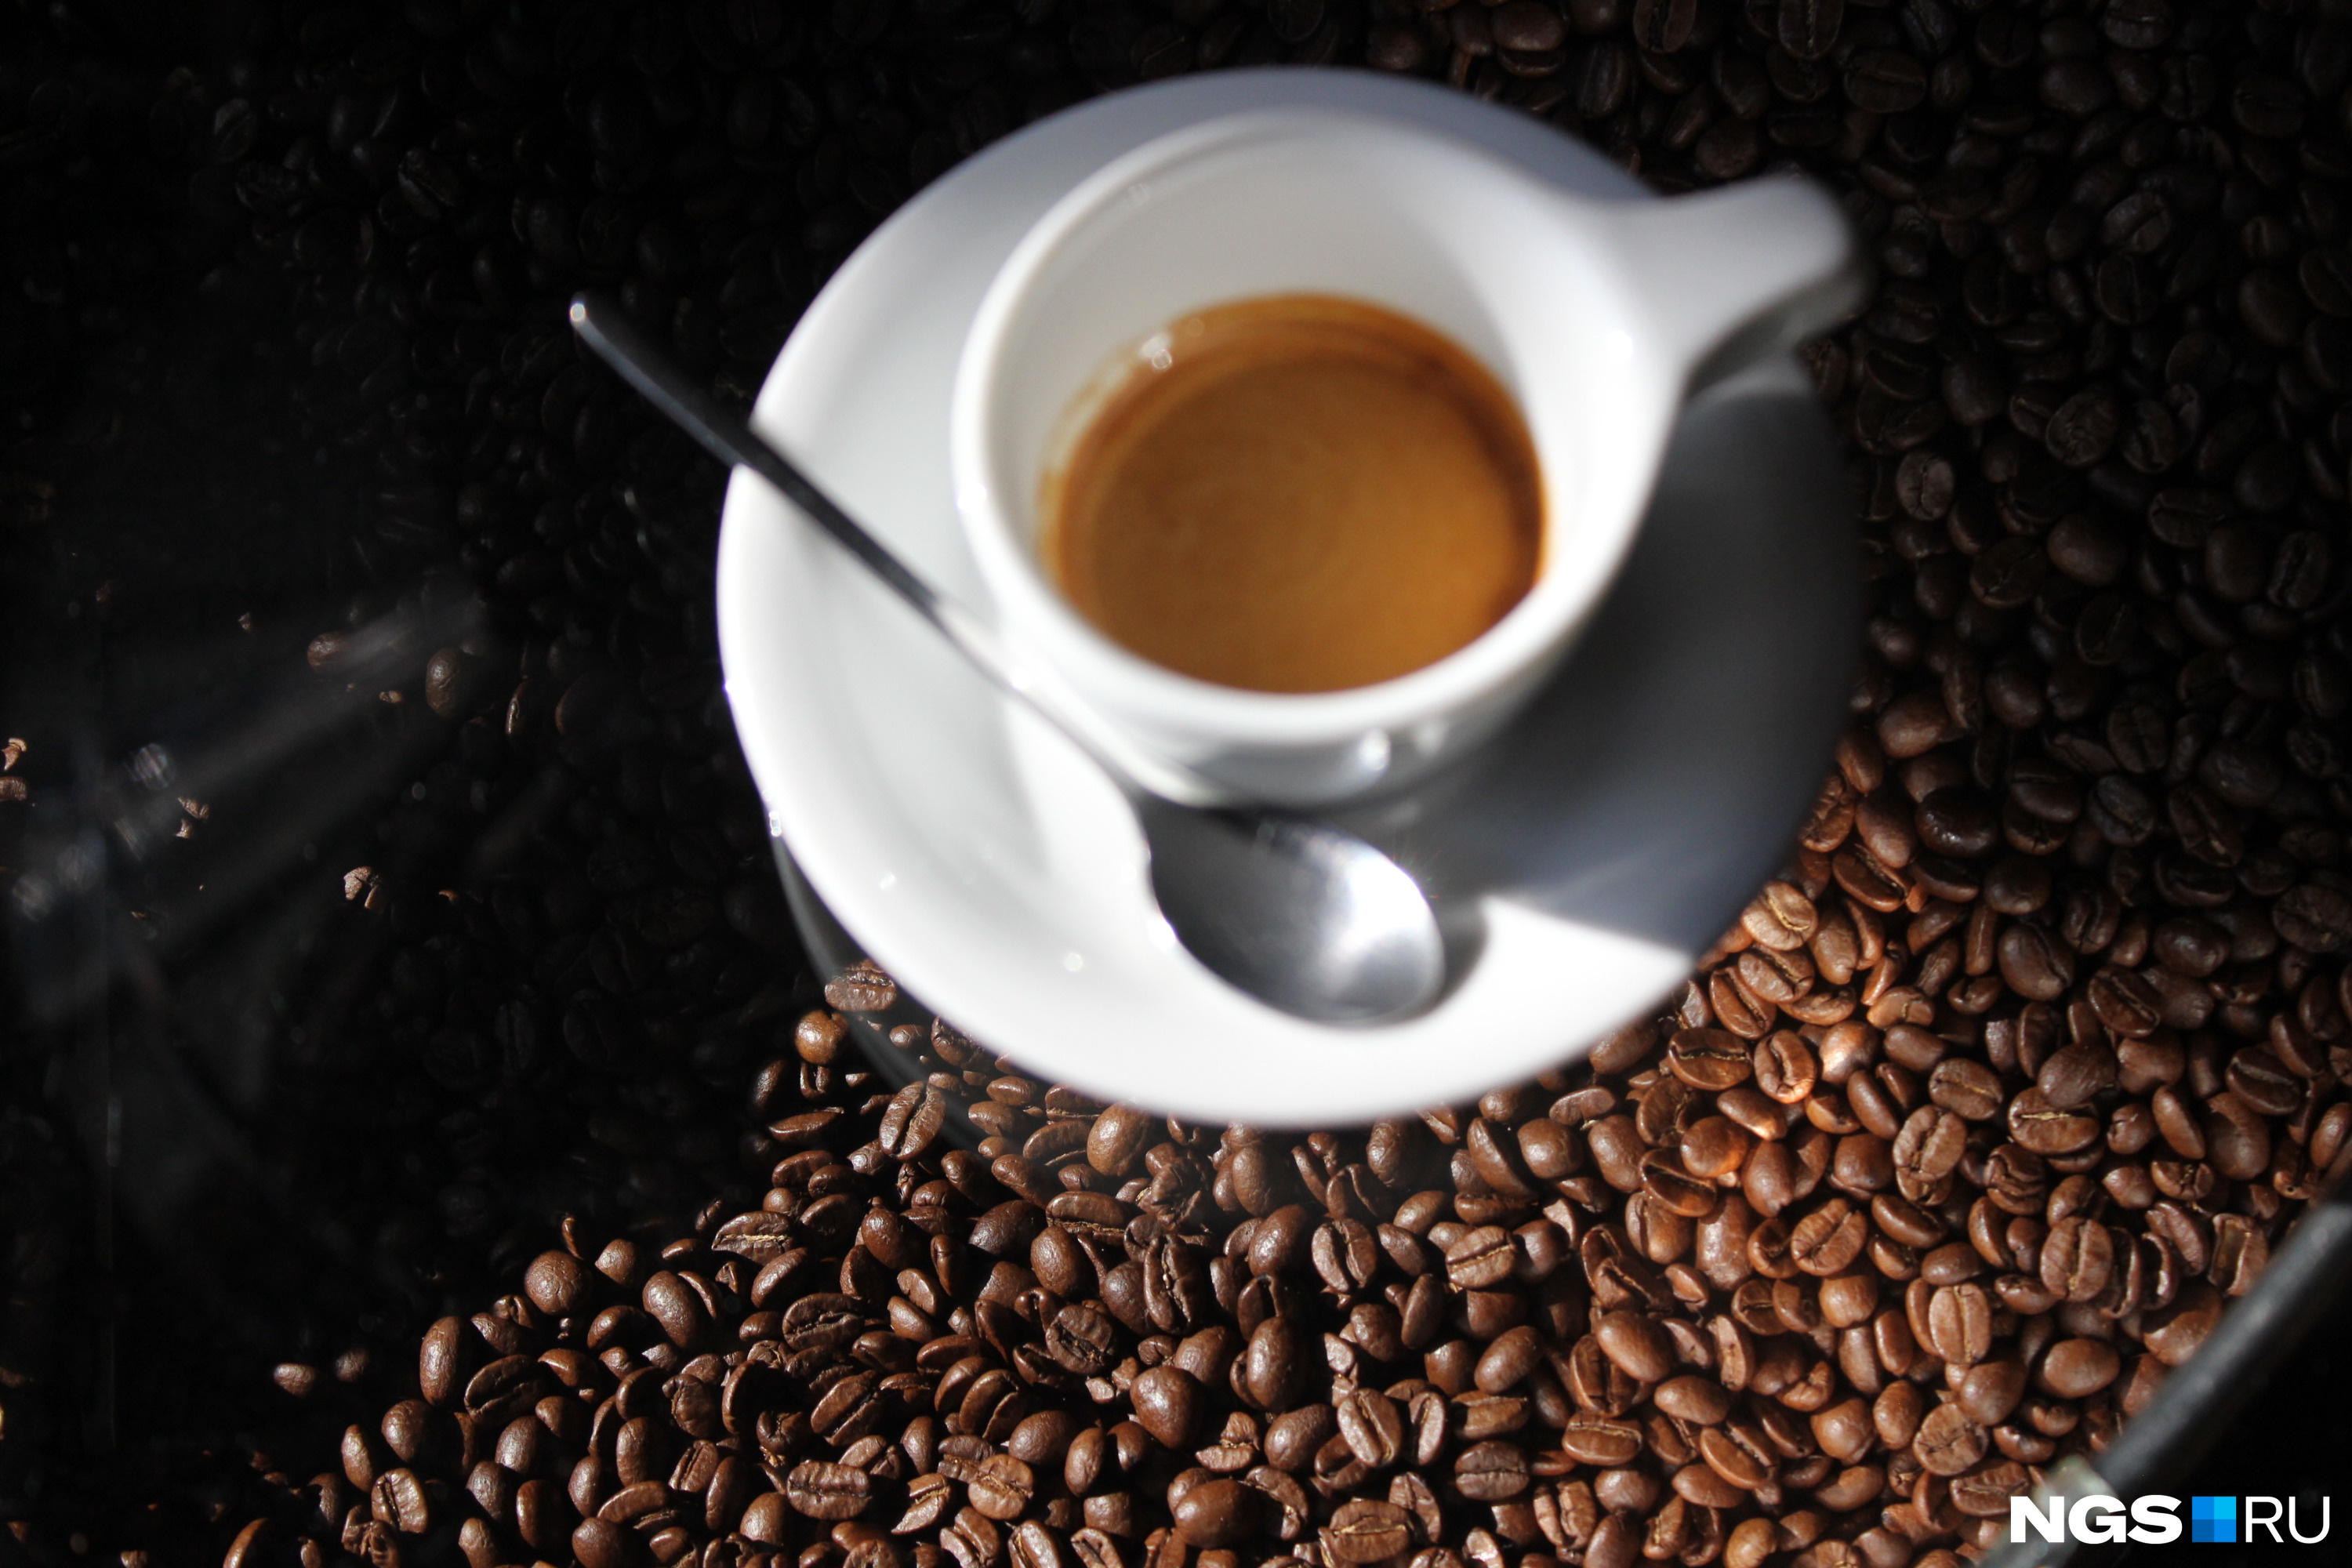 Диетологи советуют пить кофе до 14 часов и попробовать частично заменить его на цикорий